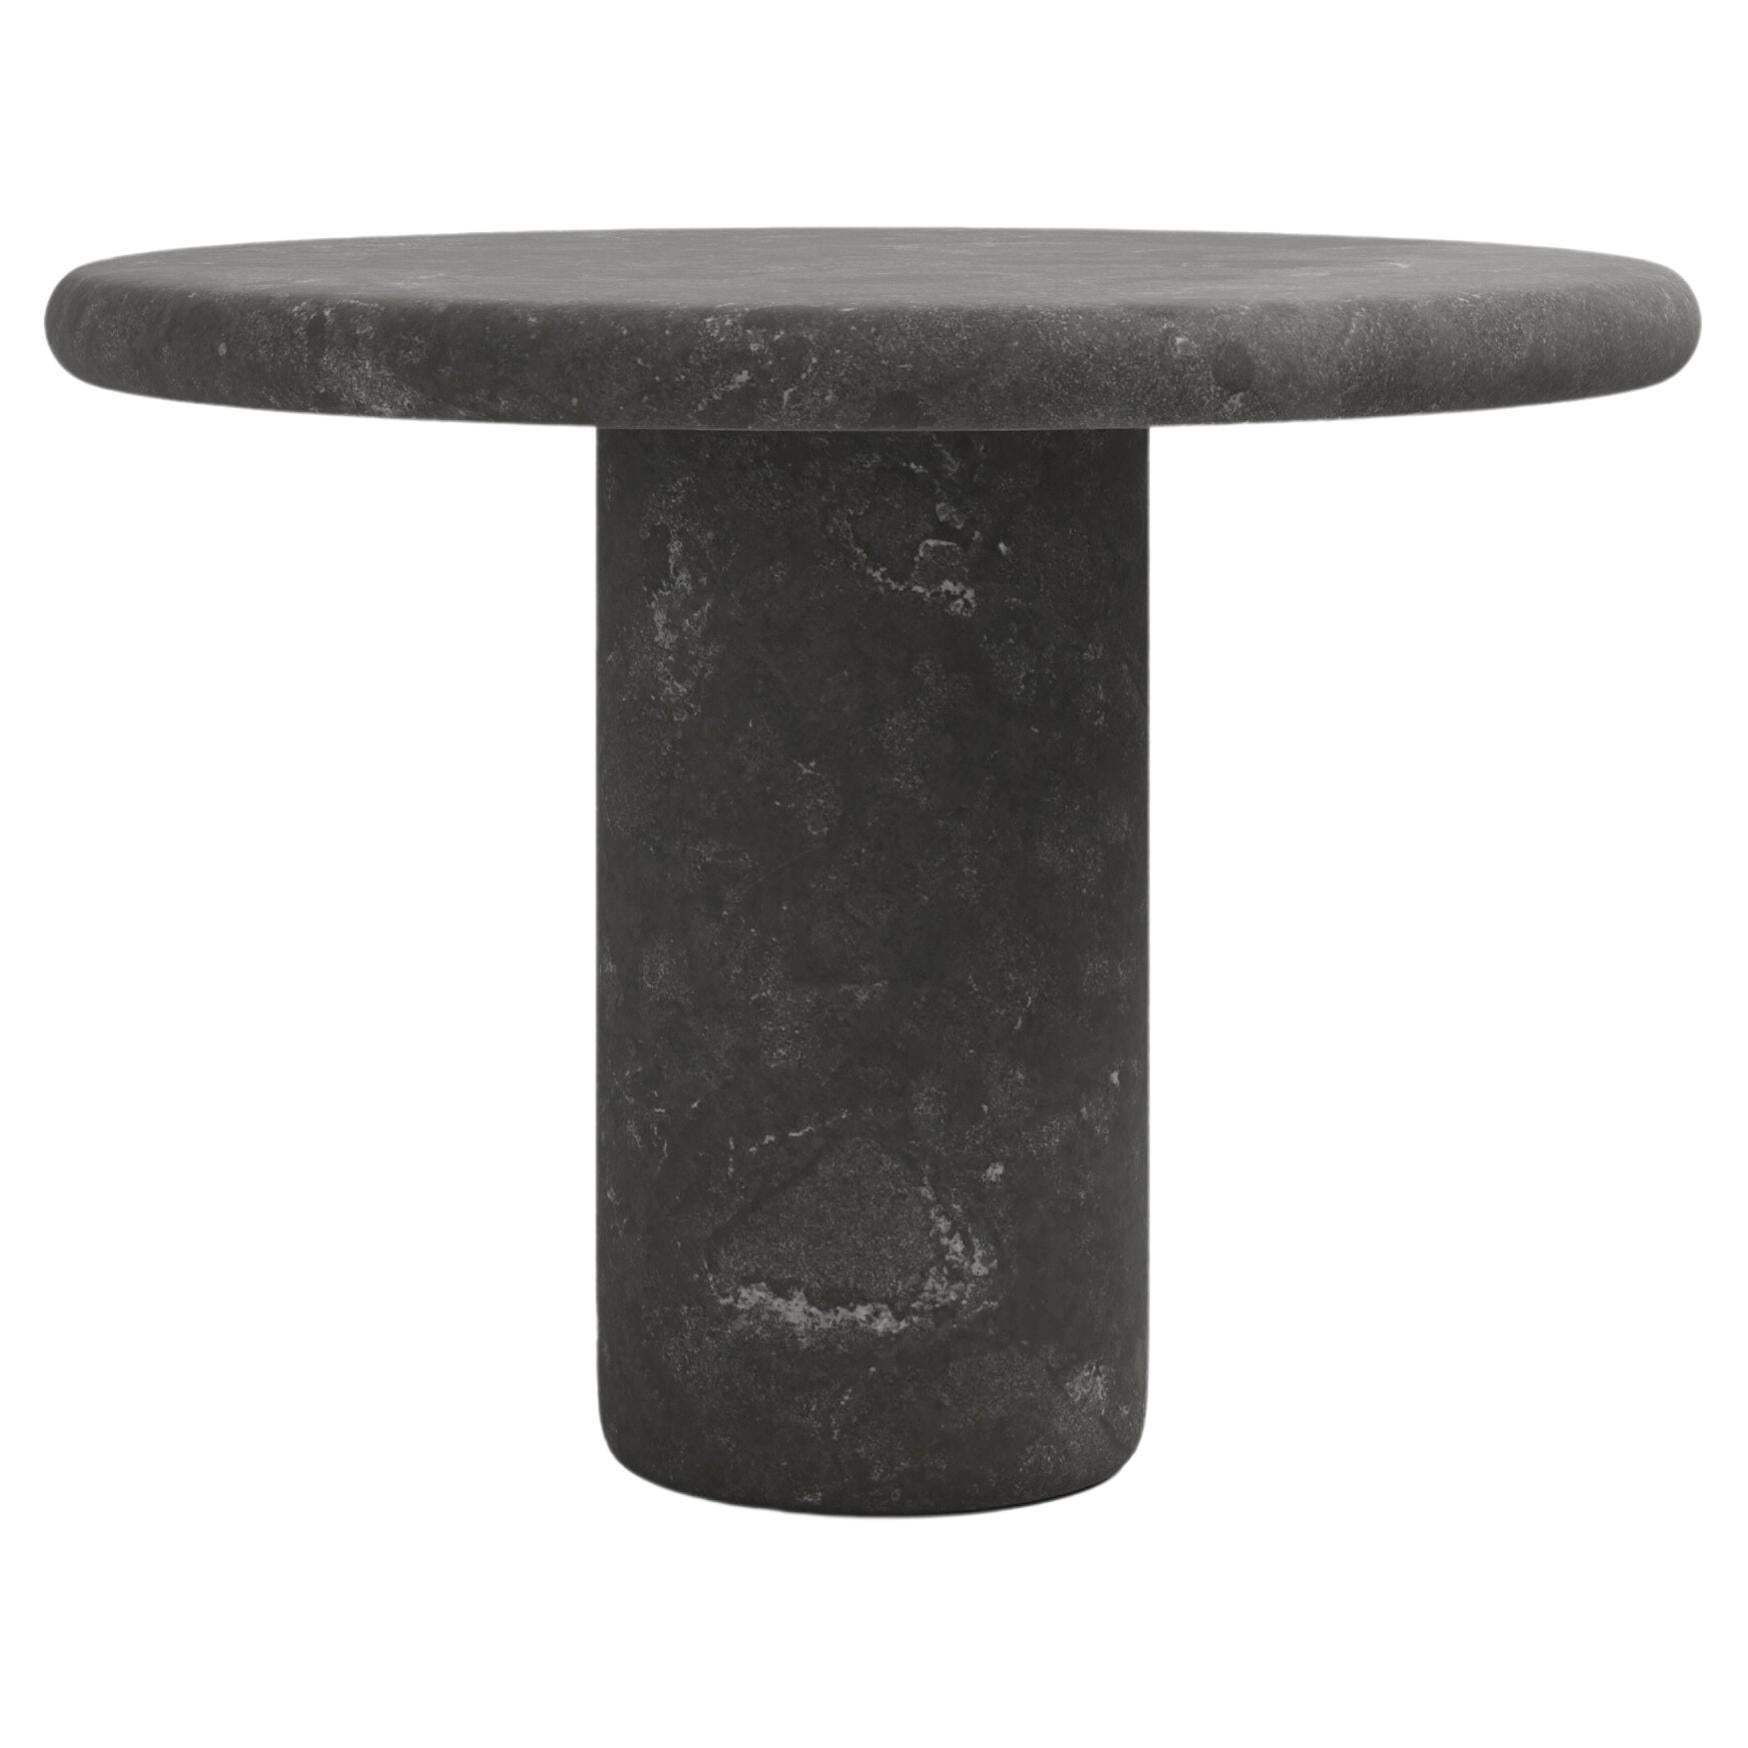 FORM(LA) Luna Round Dining Table 48”L x 48”W x 30”H Nero Petite Granite For Sale